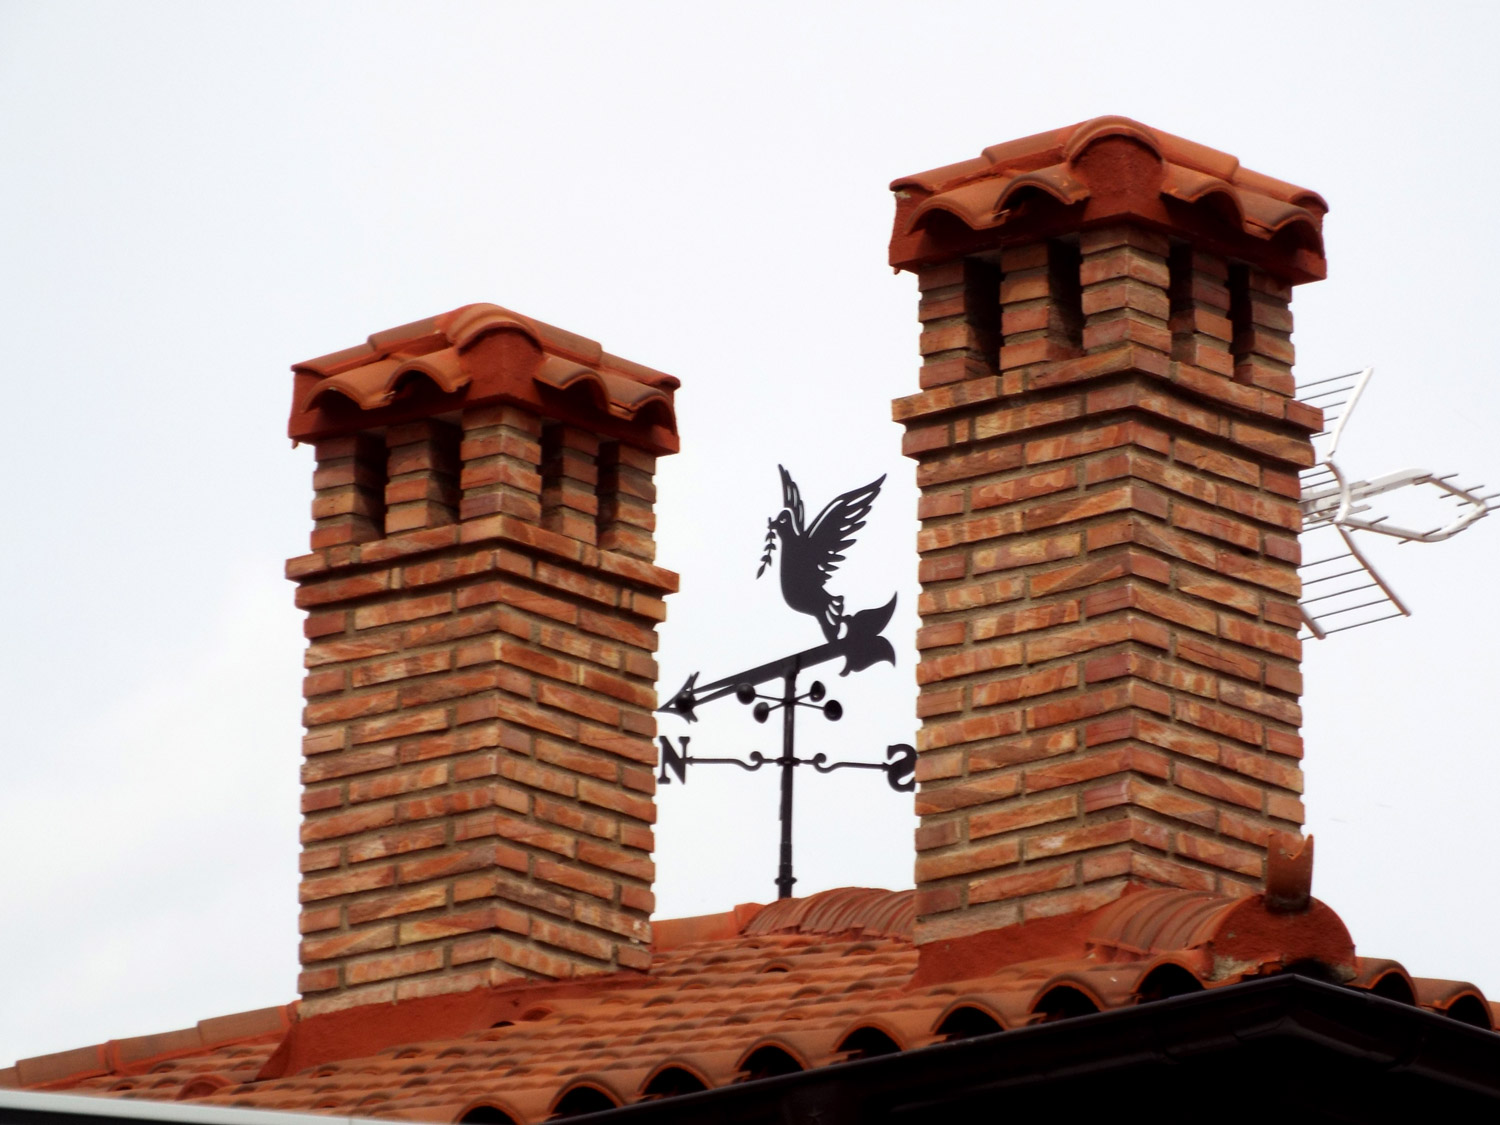 detalle del tejado de la casa con una veleta con forma de paloma